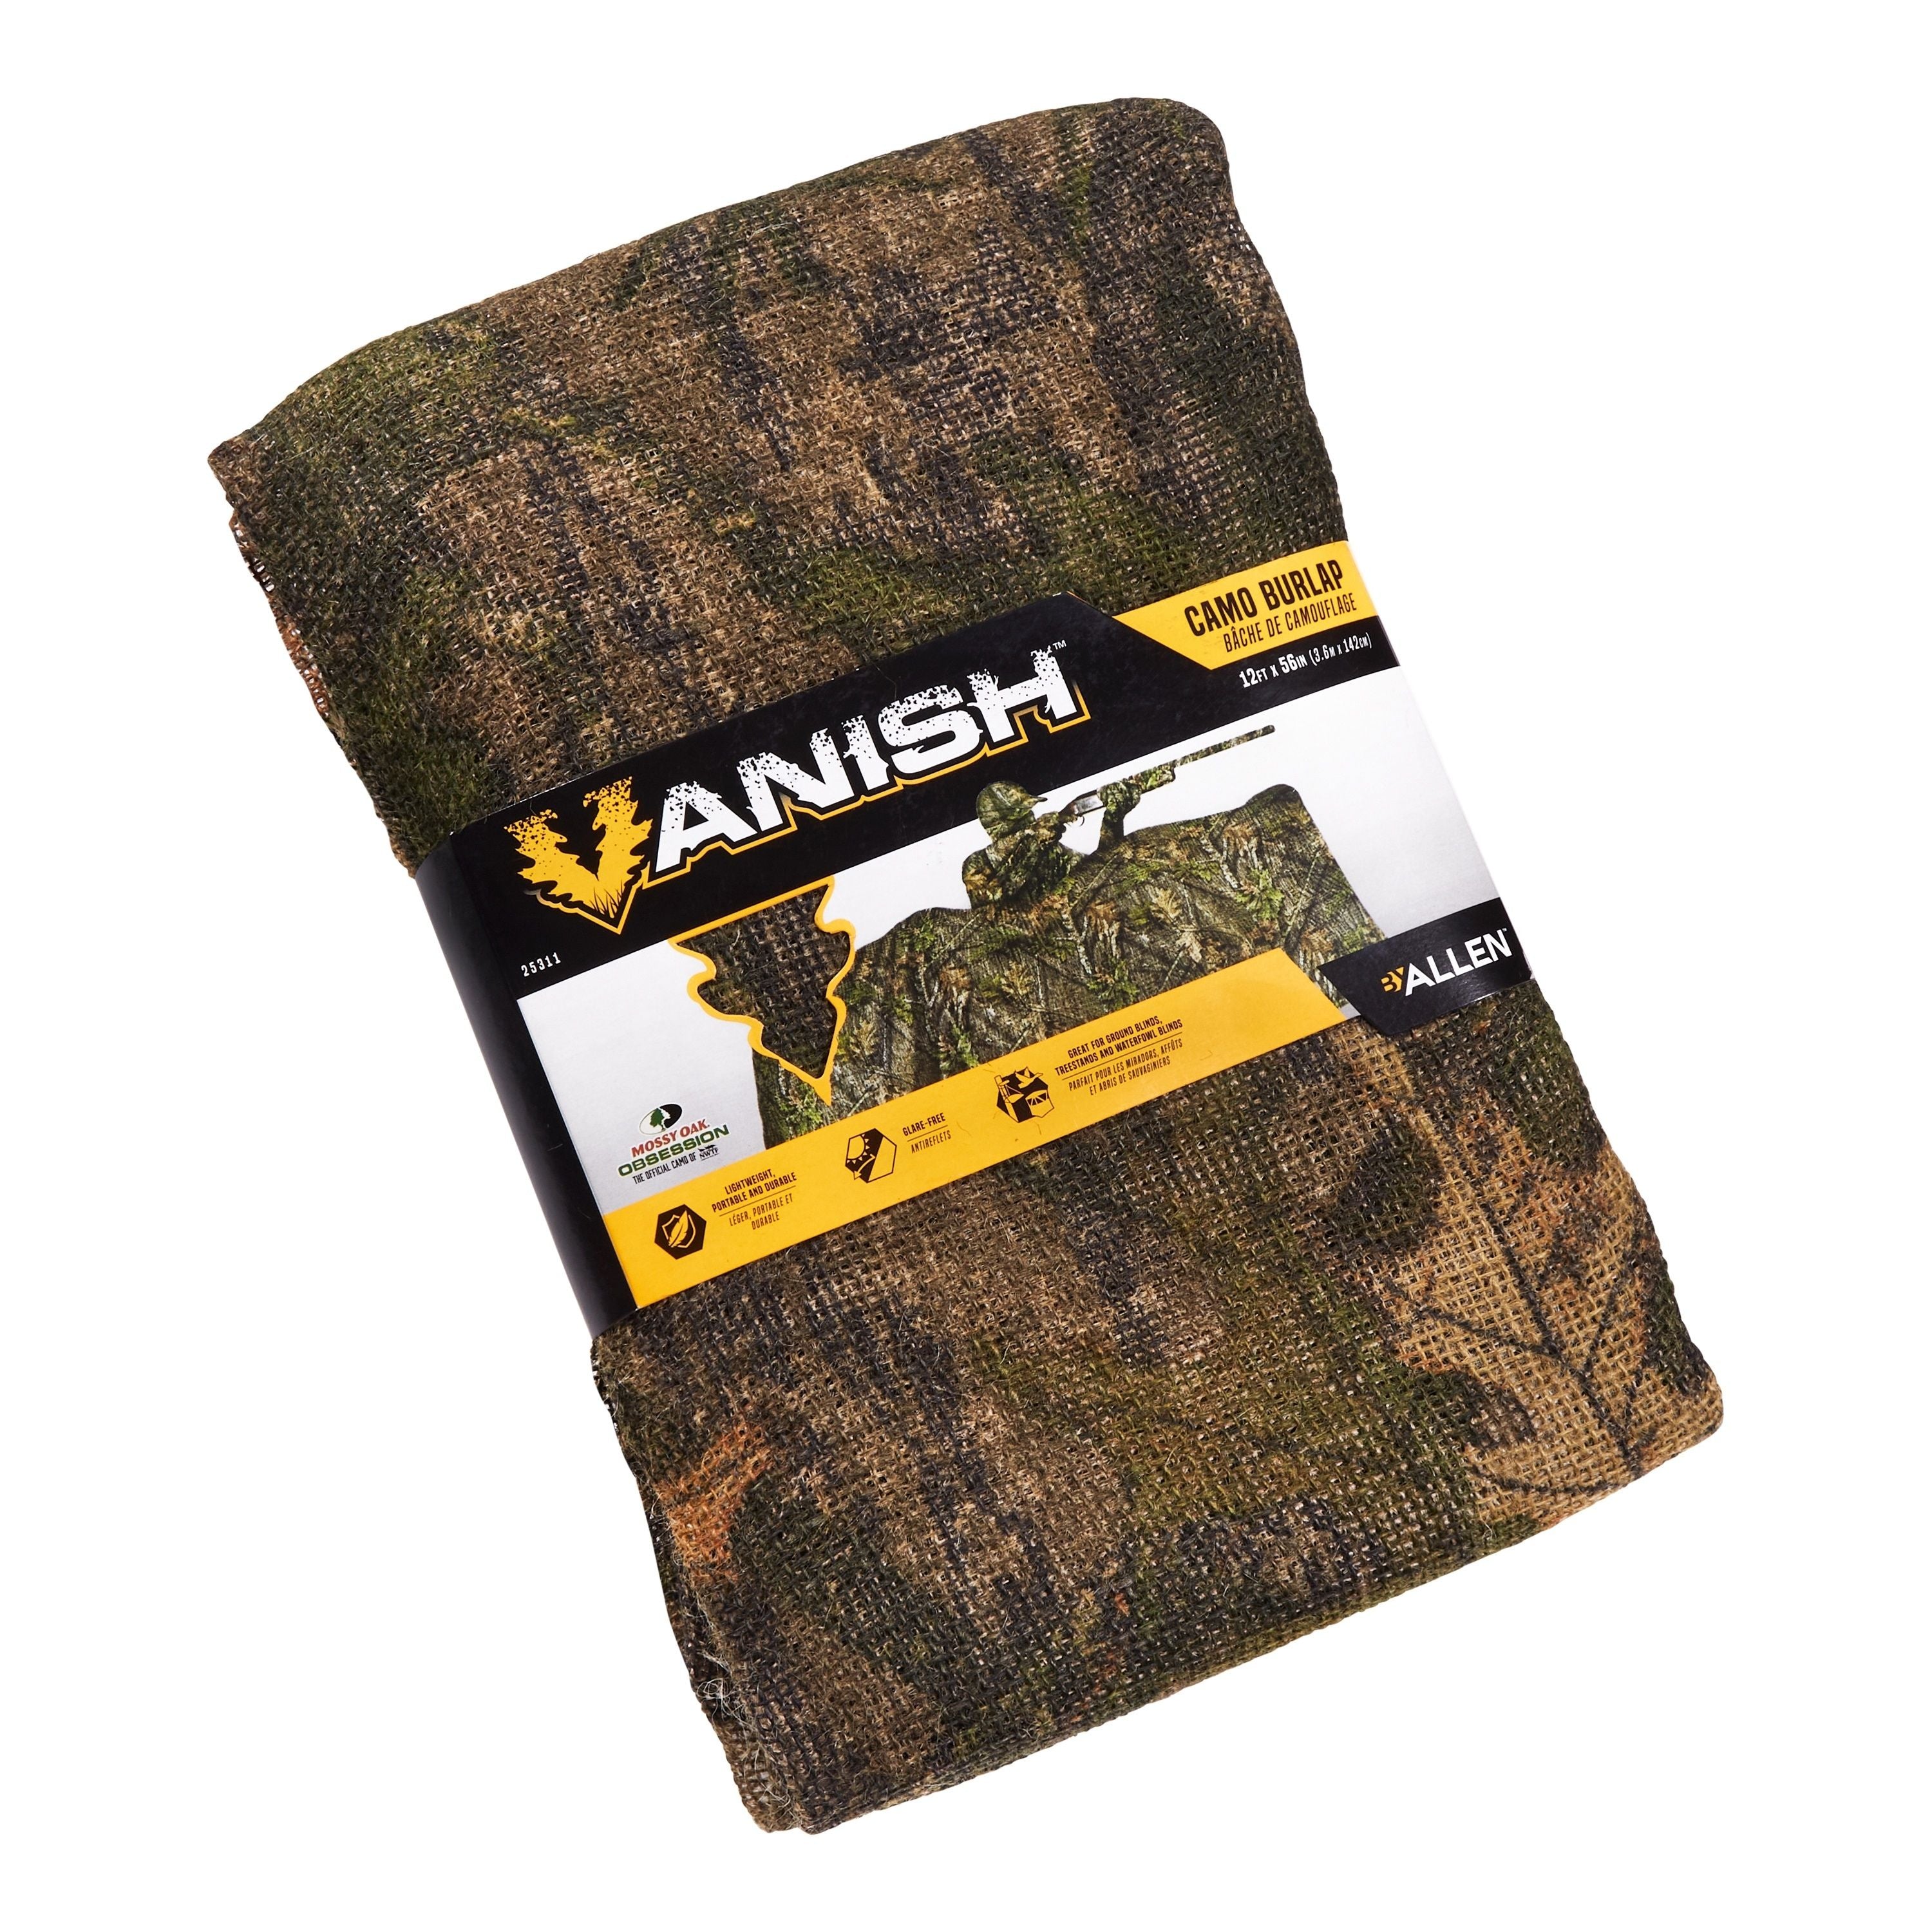 Toile en jute Vanish camouflage Mossy Oak obsession - 12’ X 54”||Vanish camo burlap, Mossy Oak obsession - 12’ X 54”